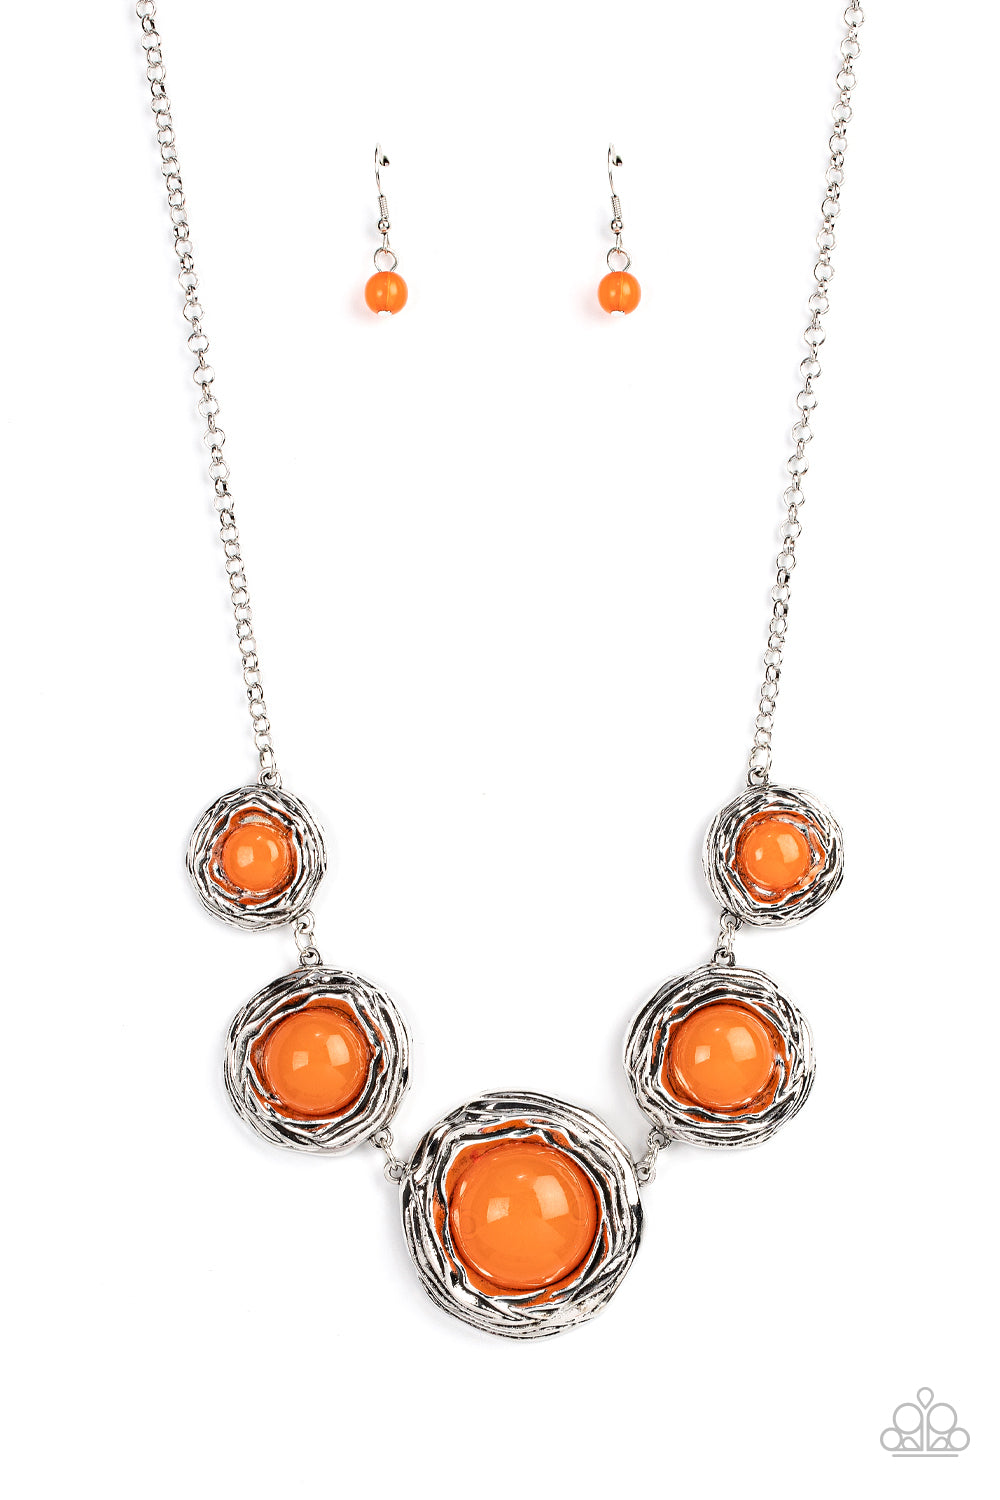 The Next NEST Thing - Orange Paparazzi Necklace